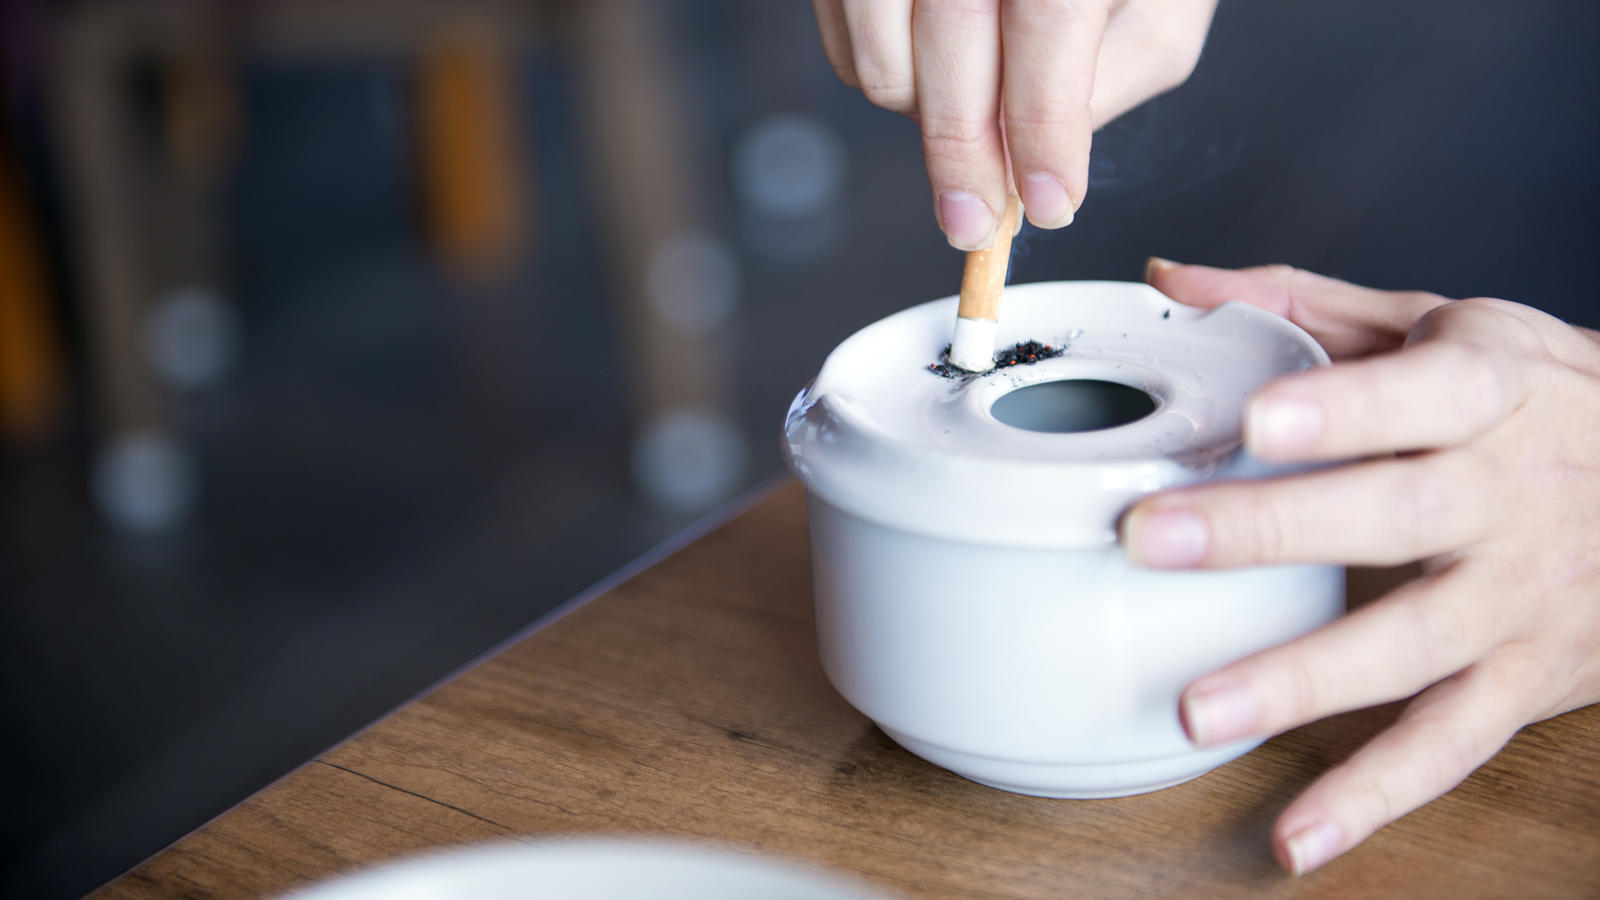 Stoffwechsel ist entscheidend: Nikotinpflaster oder kalter Entzug - Wem  welche Methode bei der Zigarettenentwöhnung hilft - FOCUS online